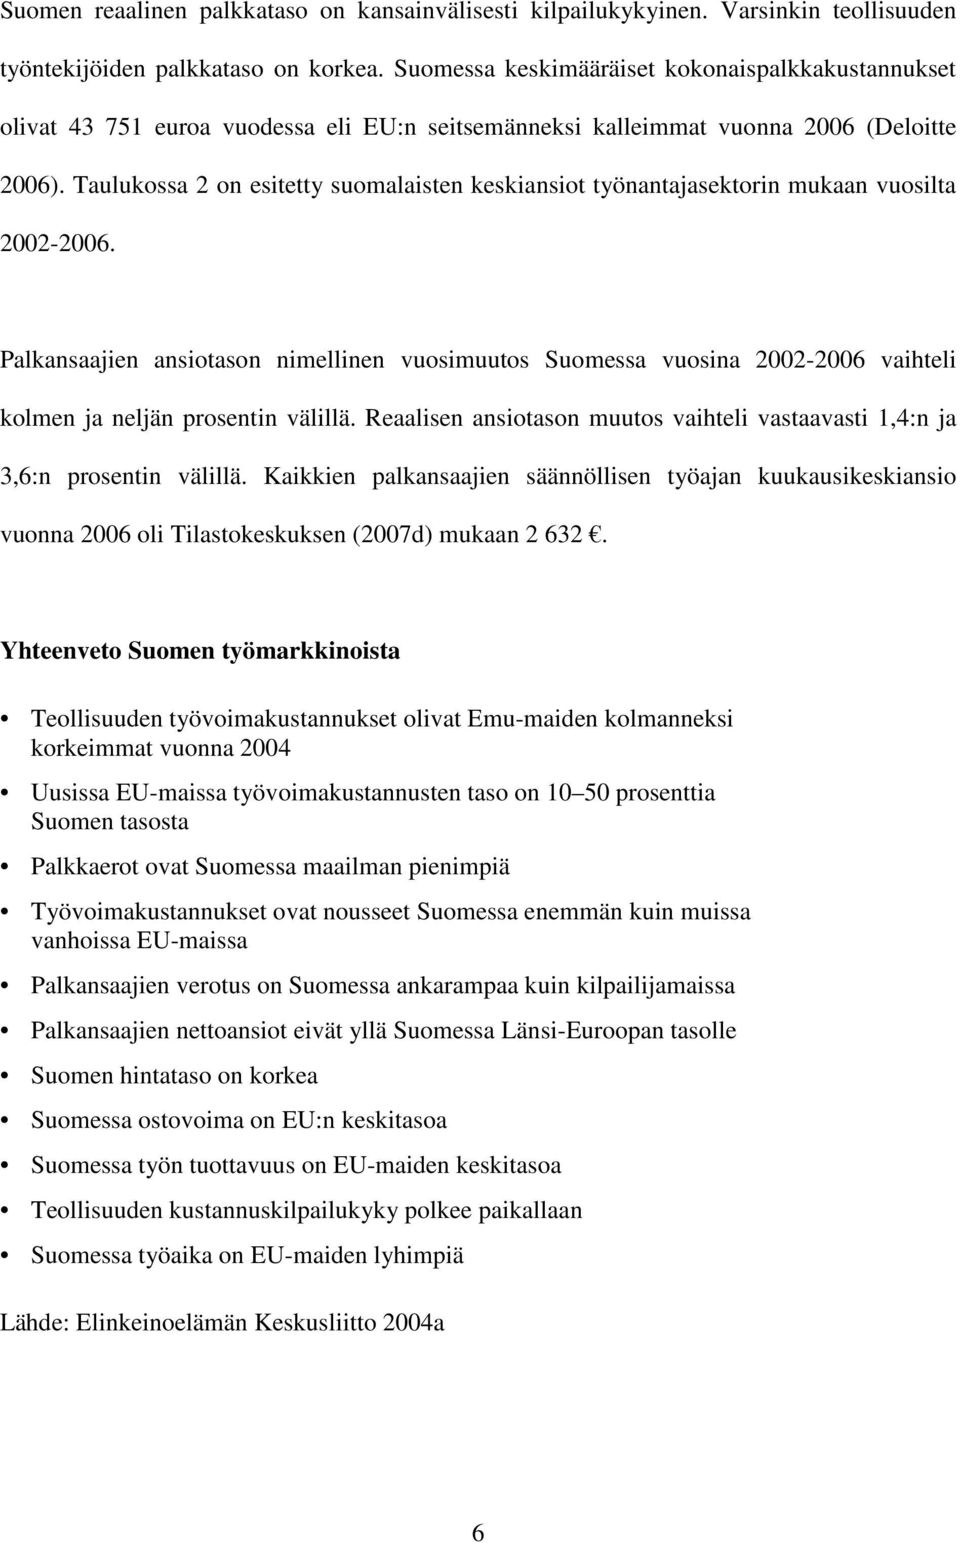 Taulukossa 2 on esitetty suomalaisten keskiansiot työnantajasektorin mukaan vuosilta 2002-2006.